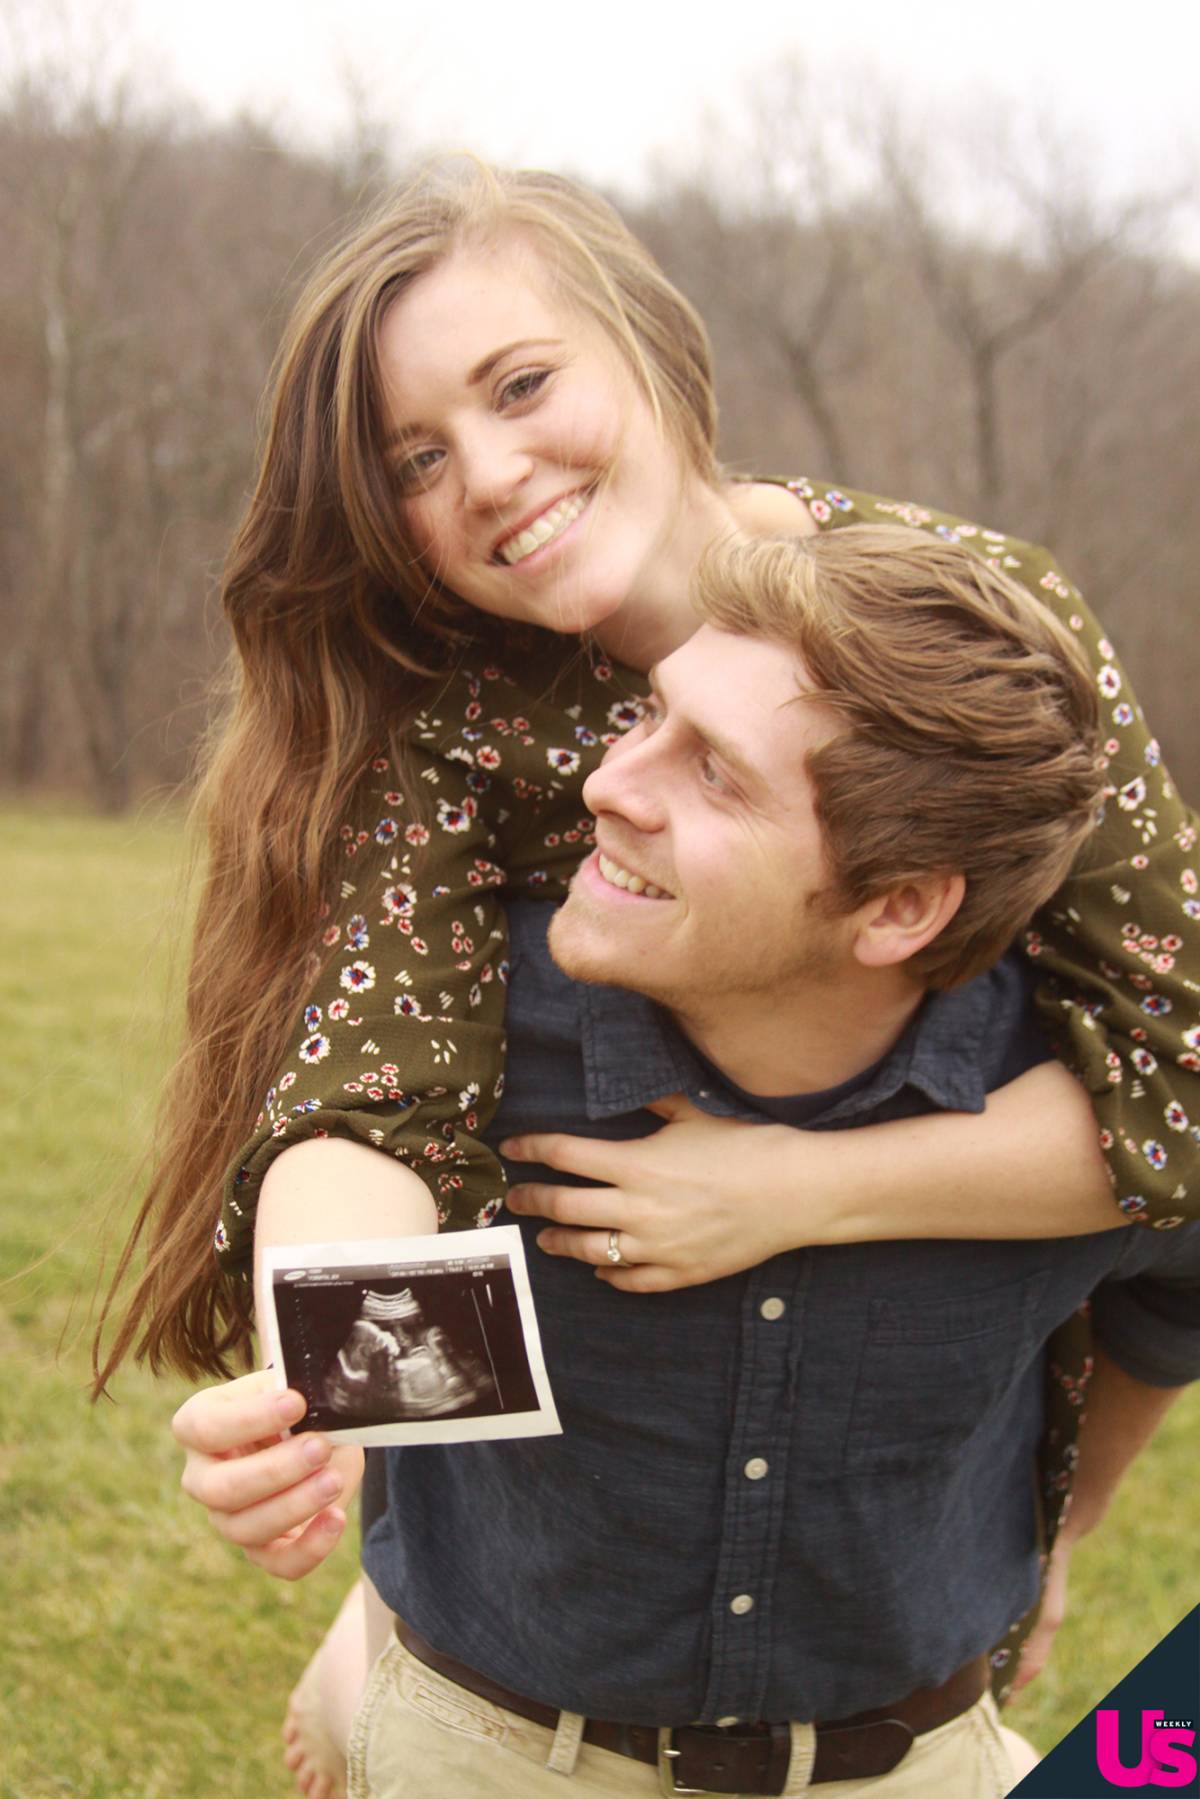 Joy-Anna Duggar Is Pregnant, Expecting 2nd Child With Austin Forsyth